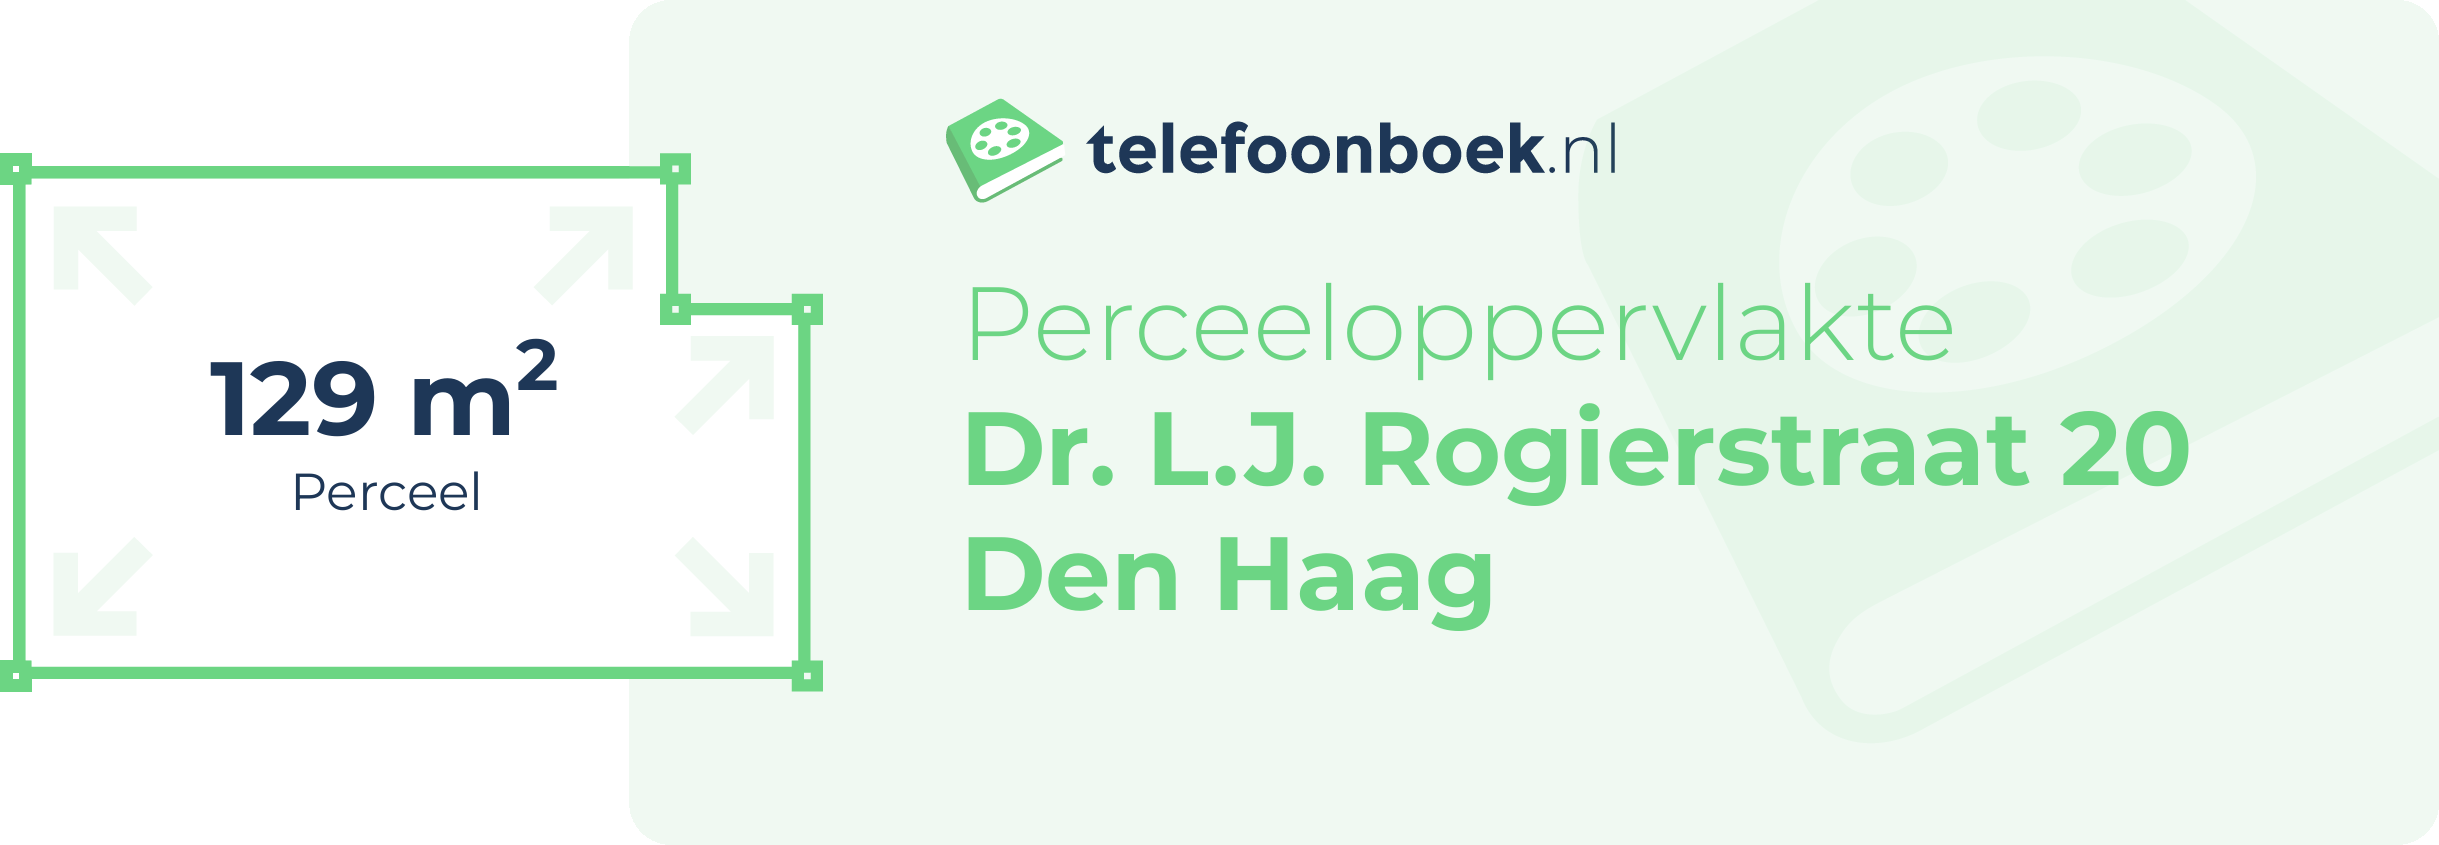 Perceeloppervlakte Dr. L.J. Rogierstraat 20 Den Haag